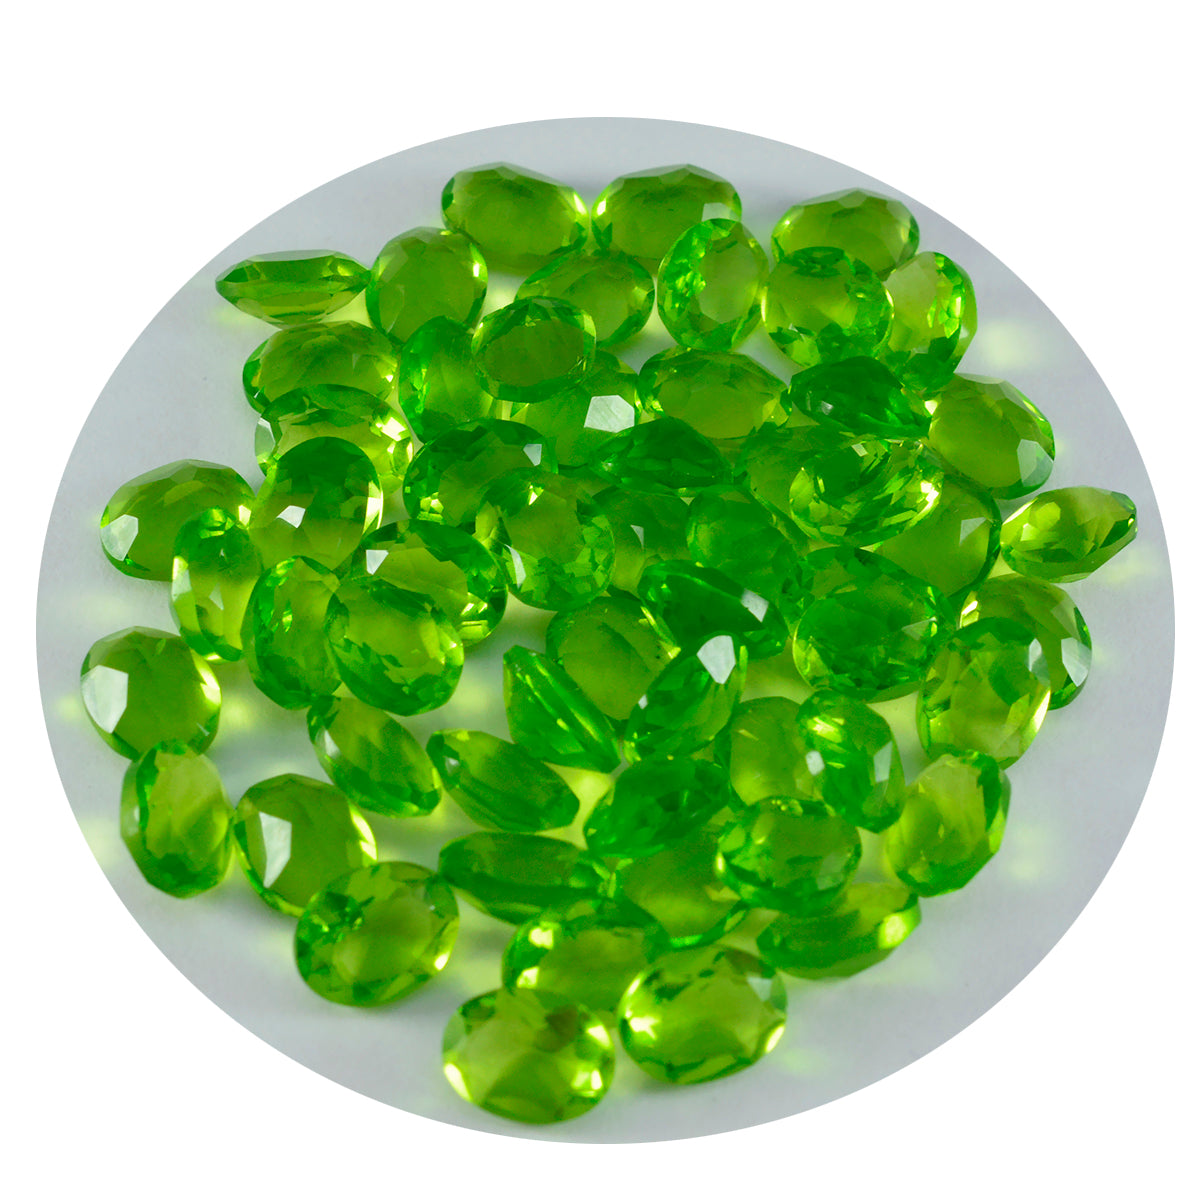 riyogems 1 st grön peridot cz facetterad 5x7 mm oval form snygg kvalitet lösa ädelstenar